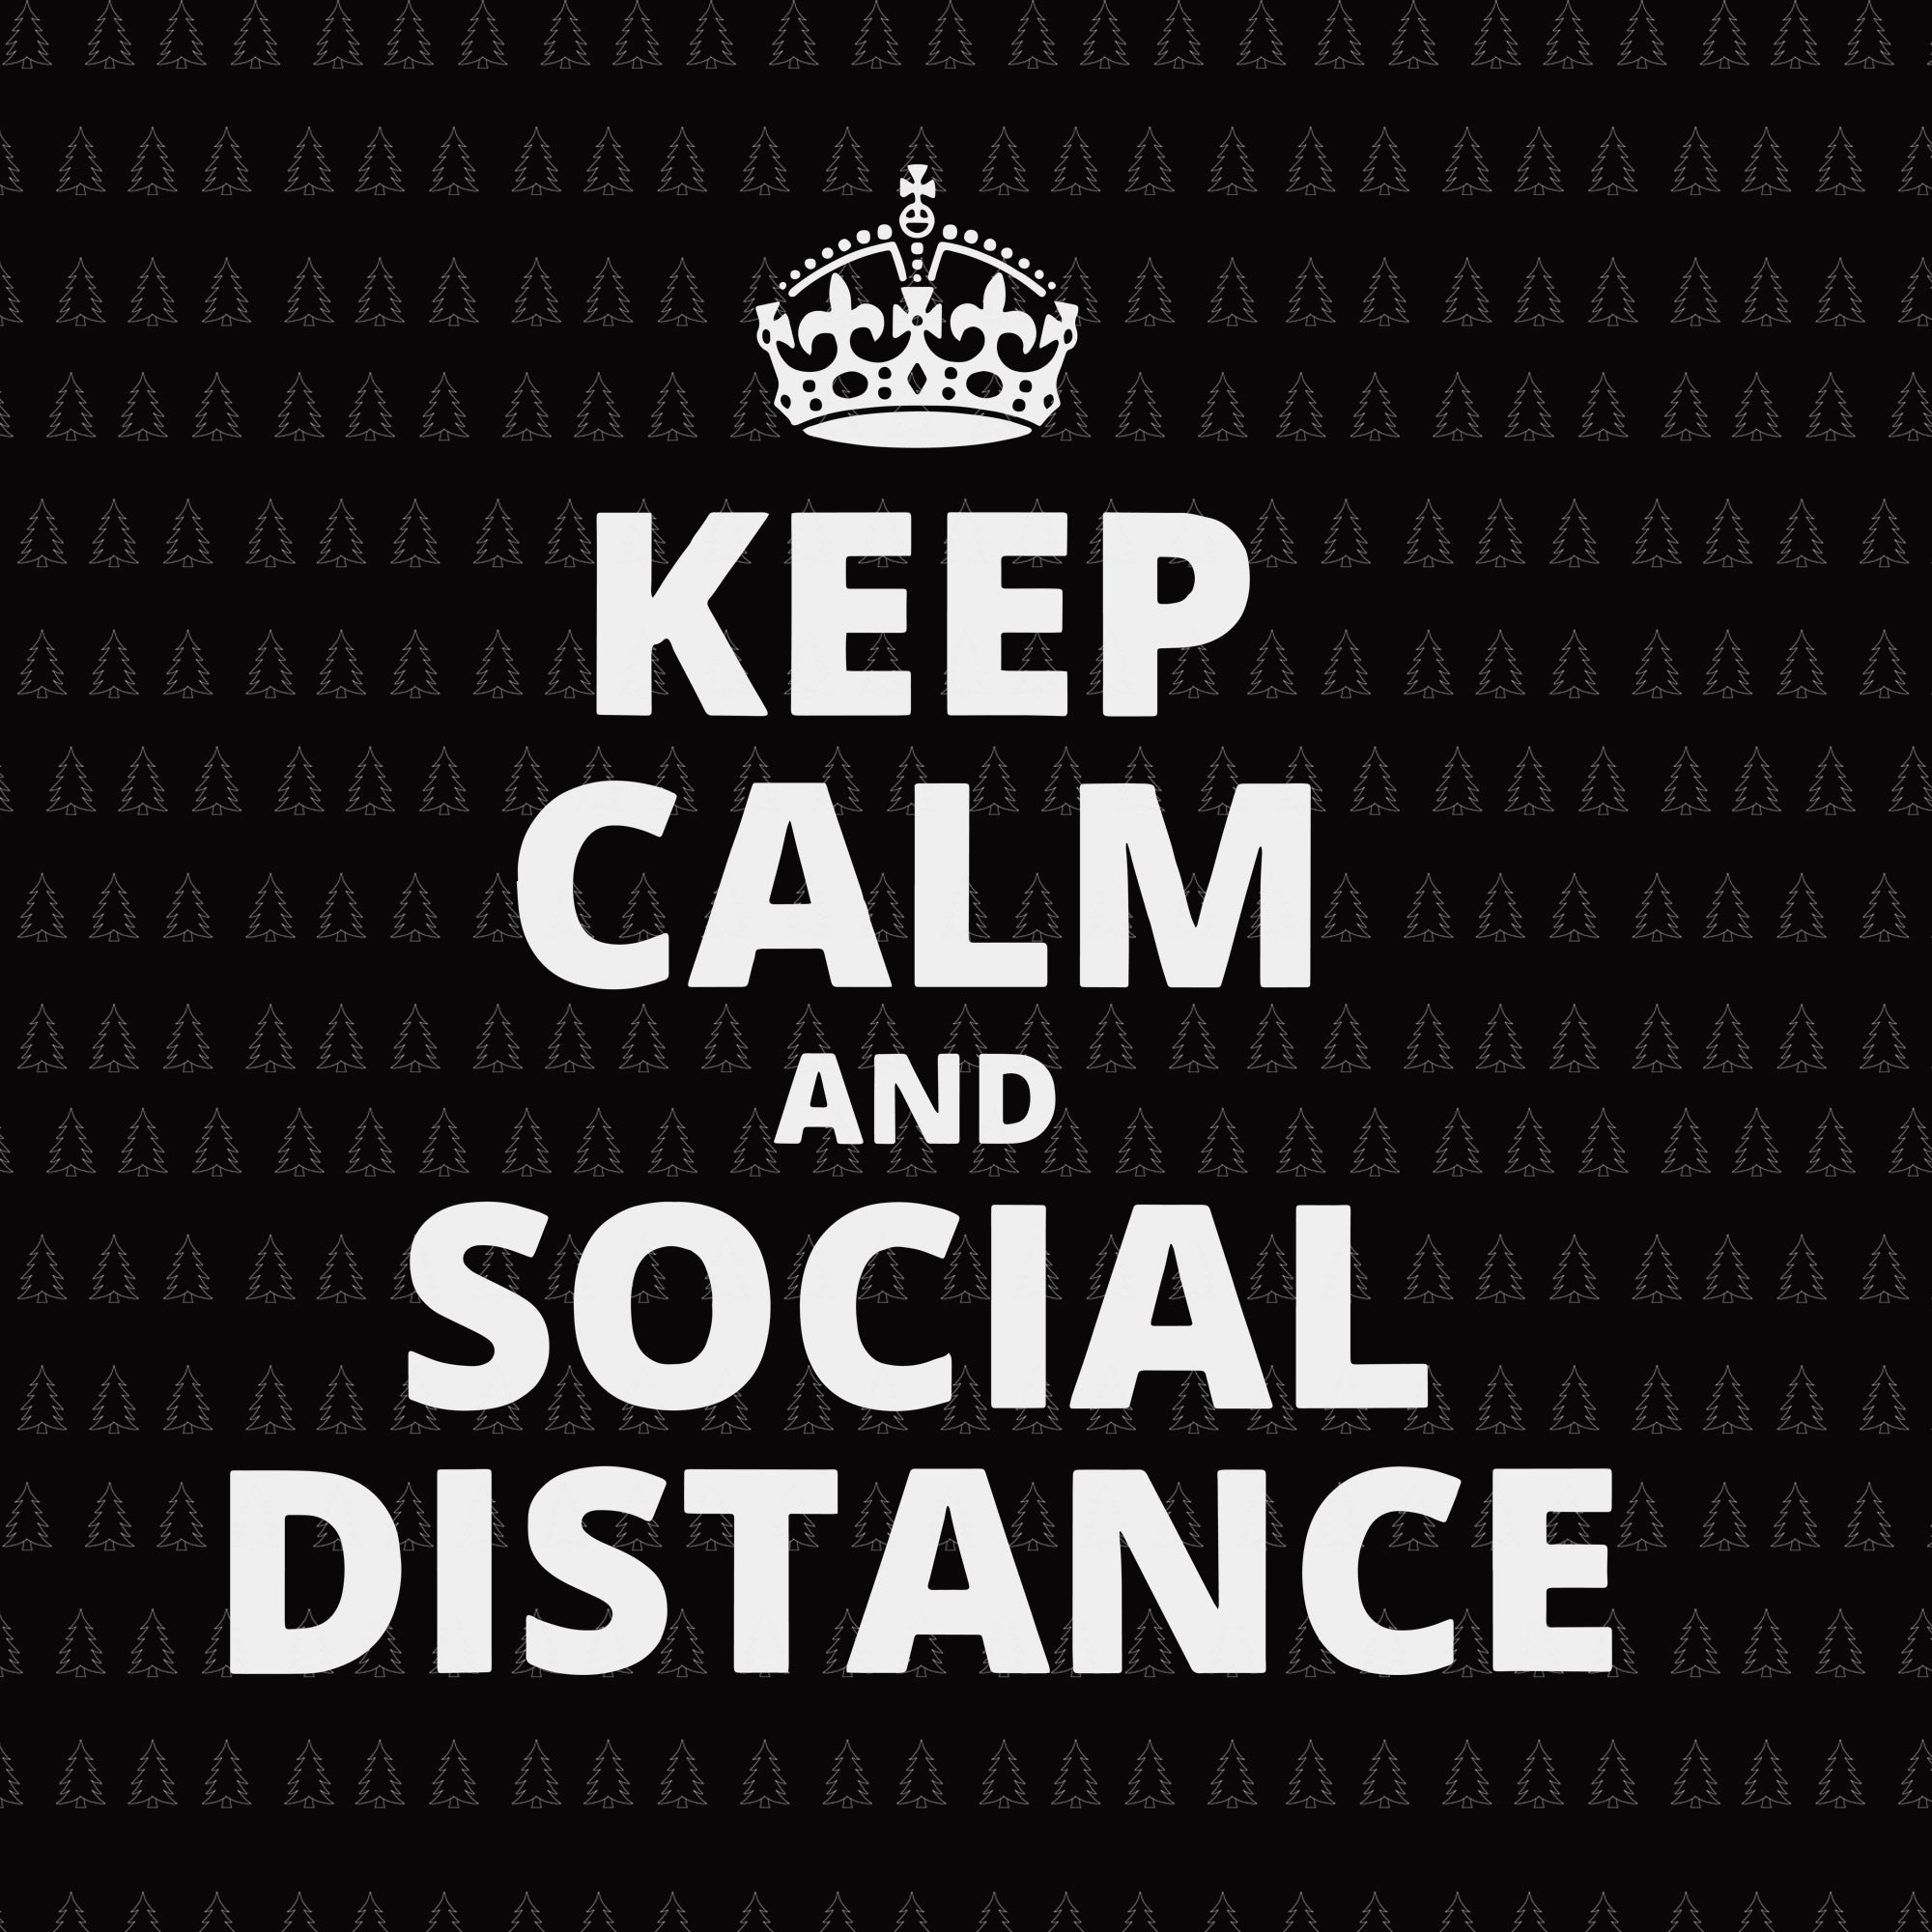 Keep calm and social distance svg, keep calm and social distance , keep calm and social distance quarantine svg, keep calm and social distance quarantine